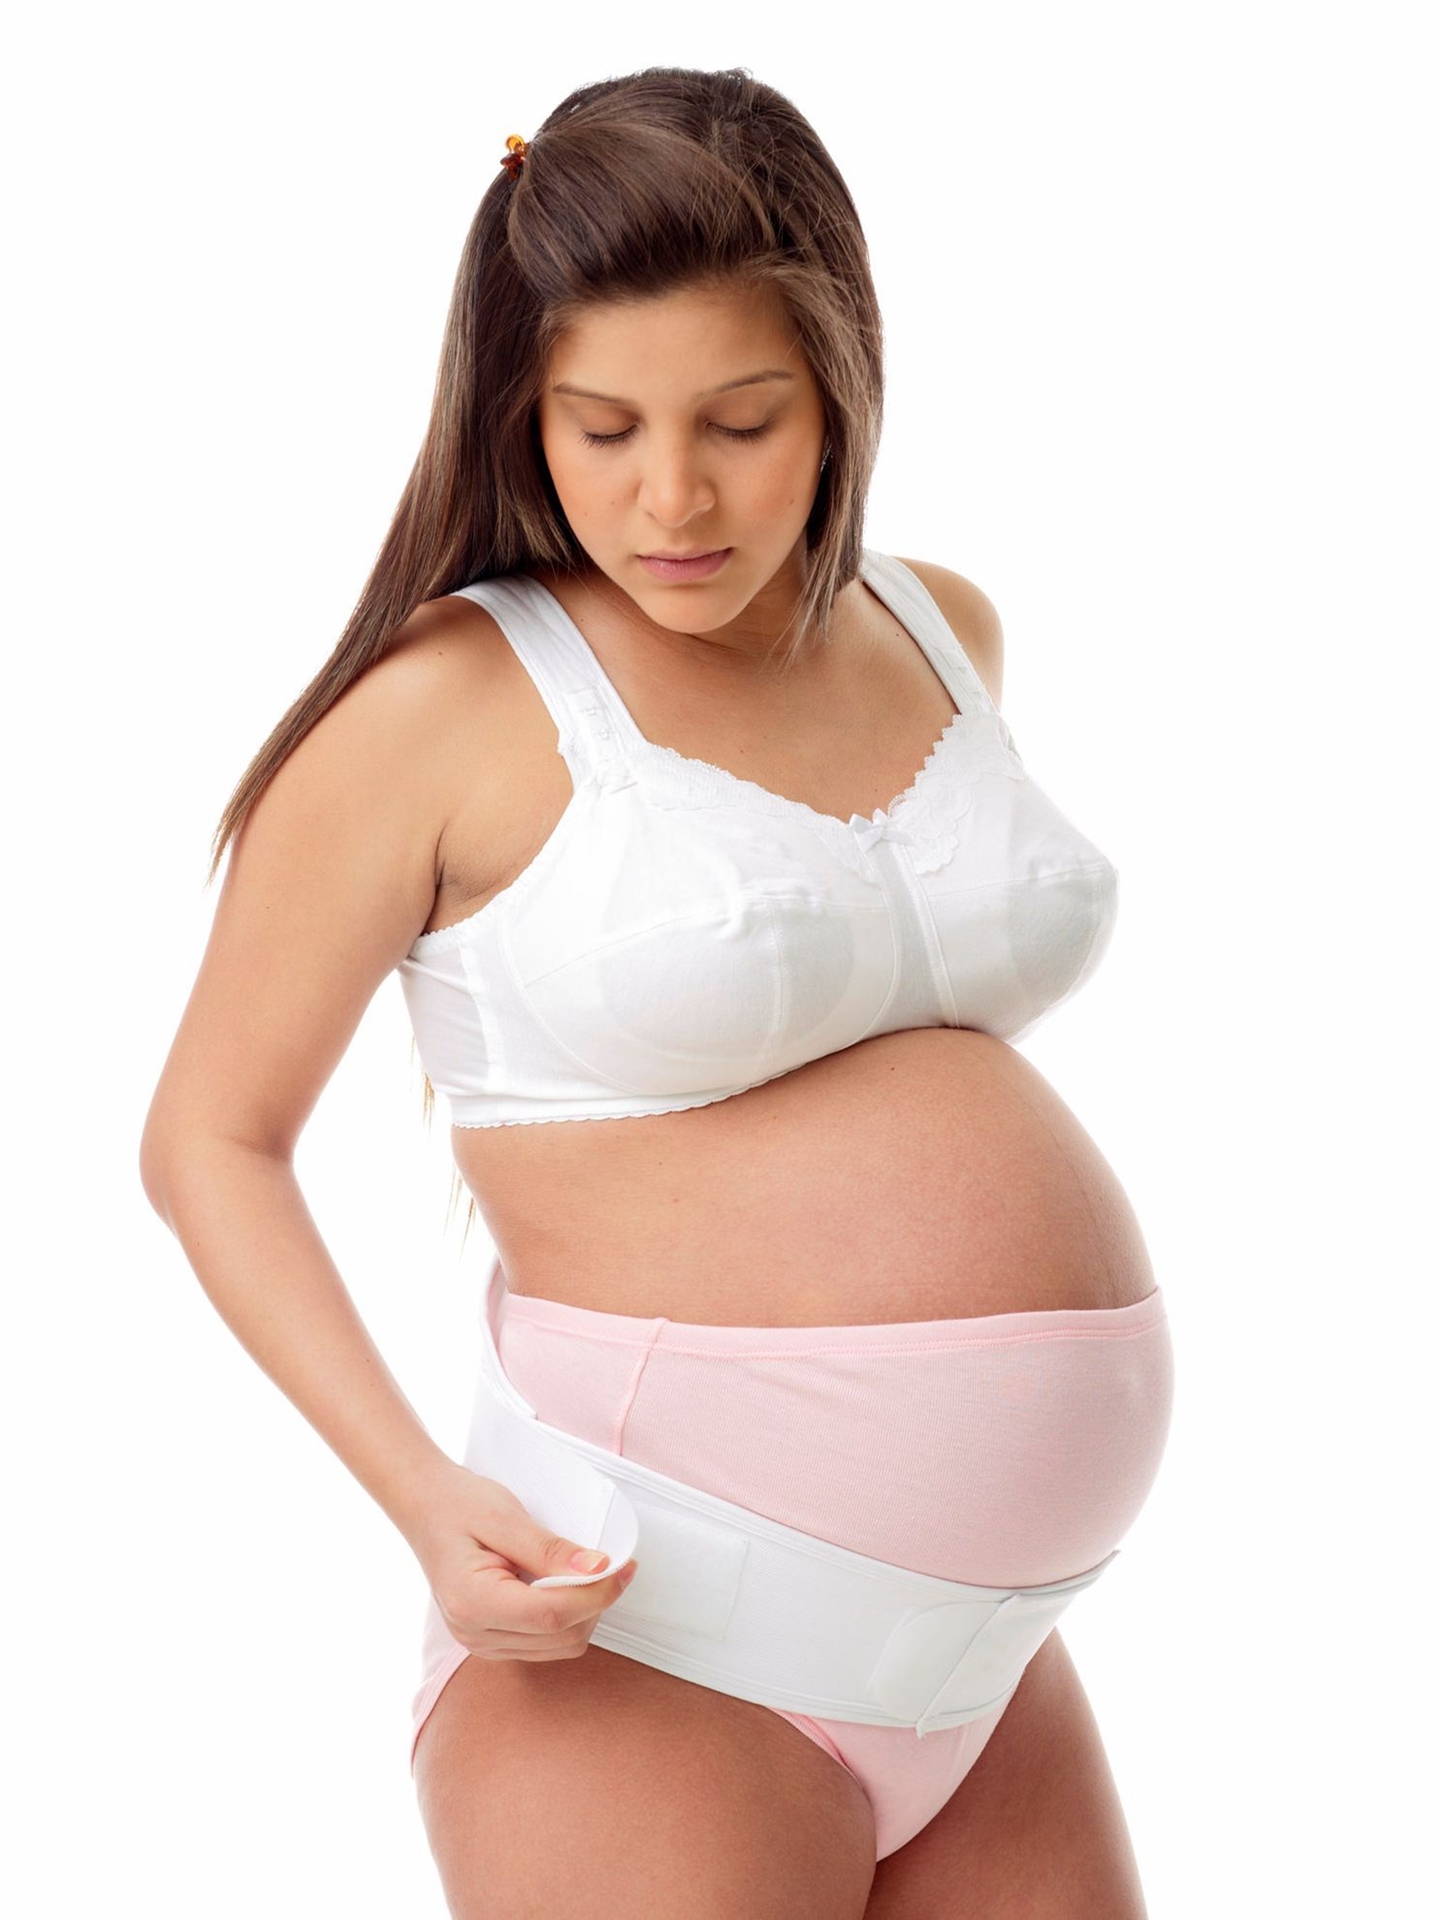  Underworks Post Delivery Girdle Belt - Maternity Belt